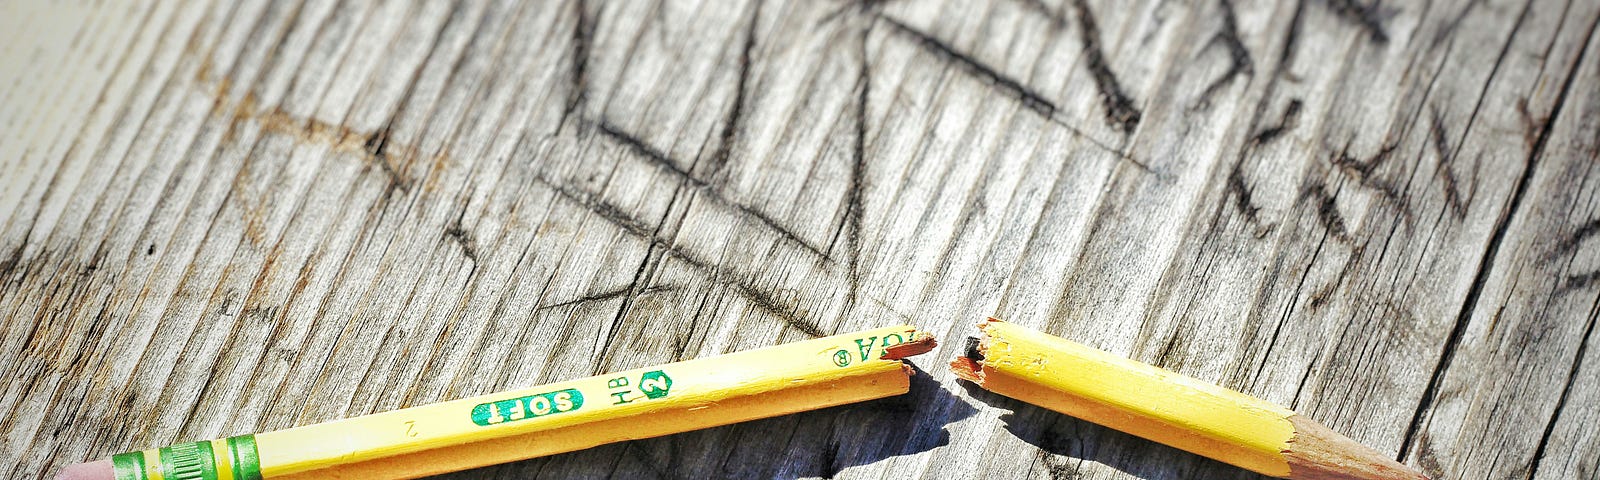 a broken pencil